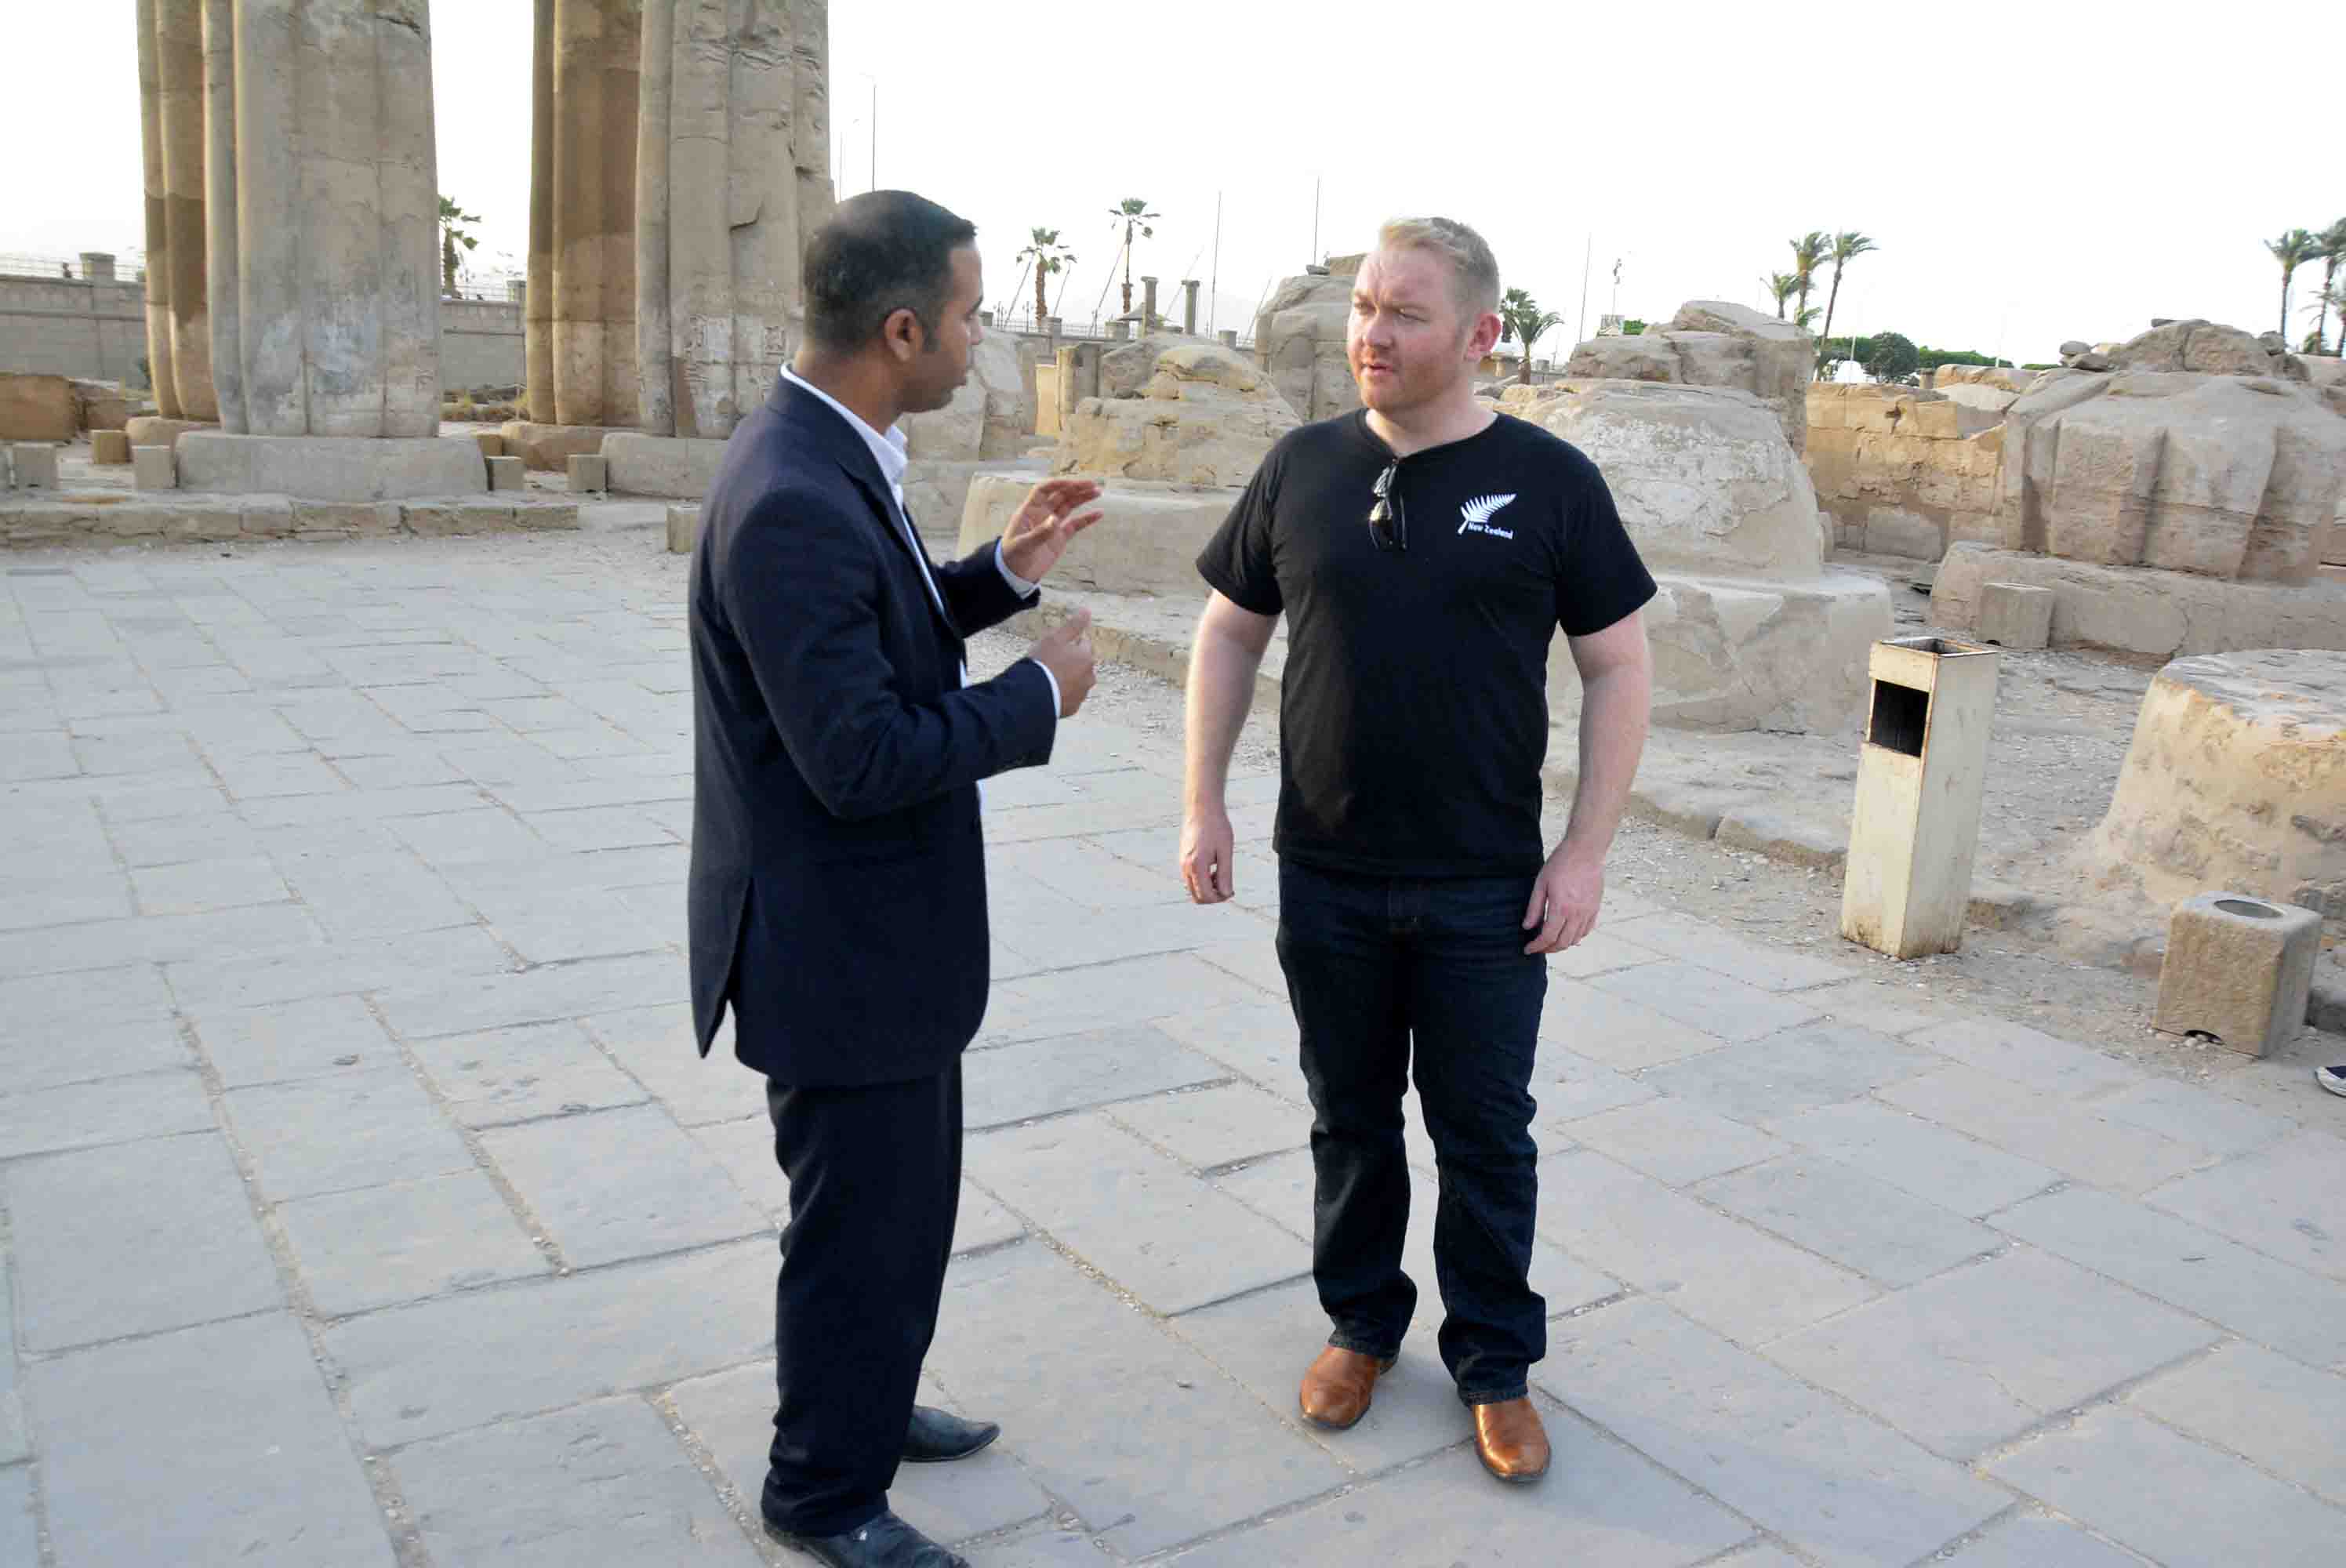 سفير نيوزلندا بالقاهرة يواصل جولاته السياحية بمعابد ومقابر الأقصر الفرعونية (6)